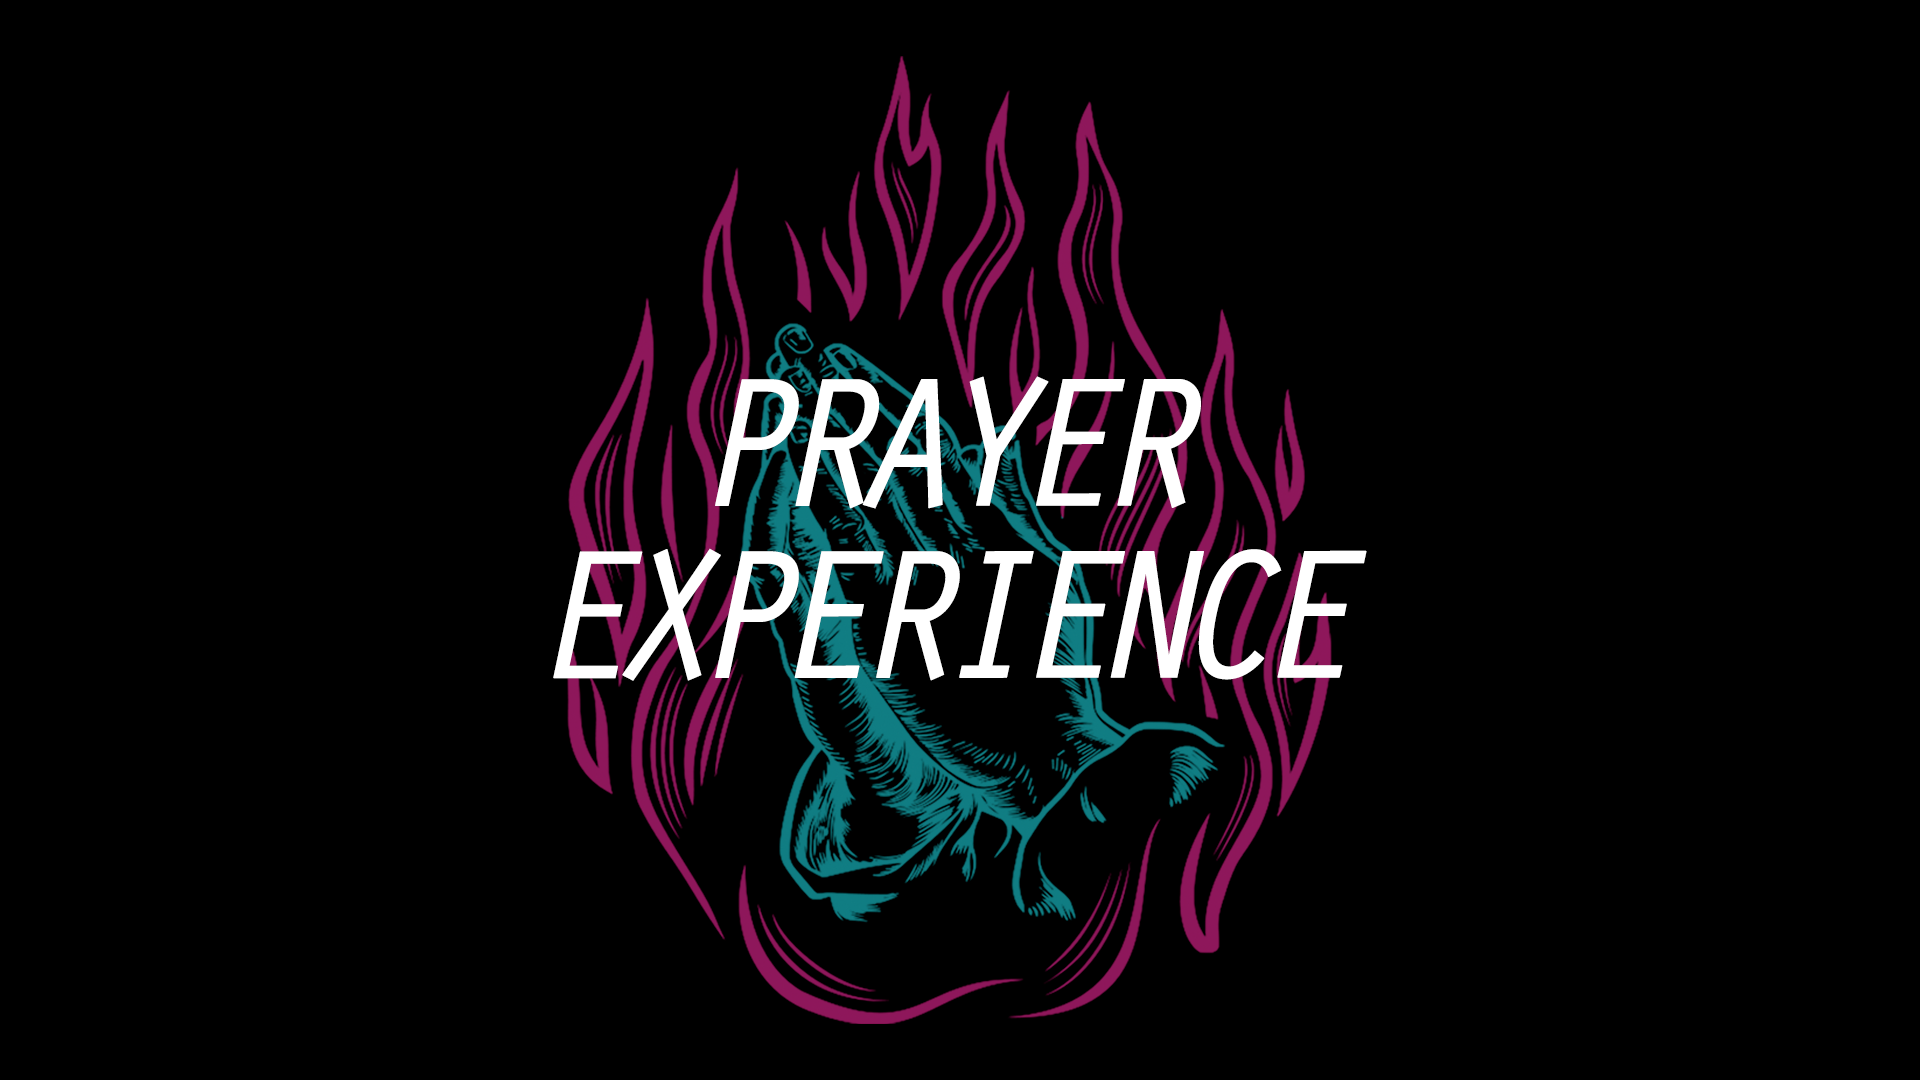 Image: Prayer Experience